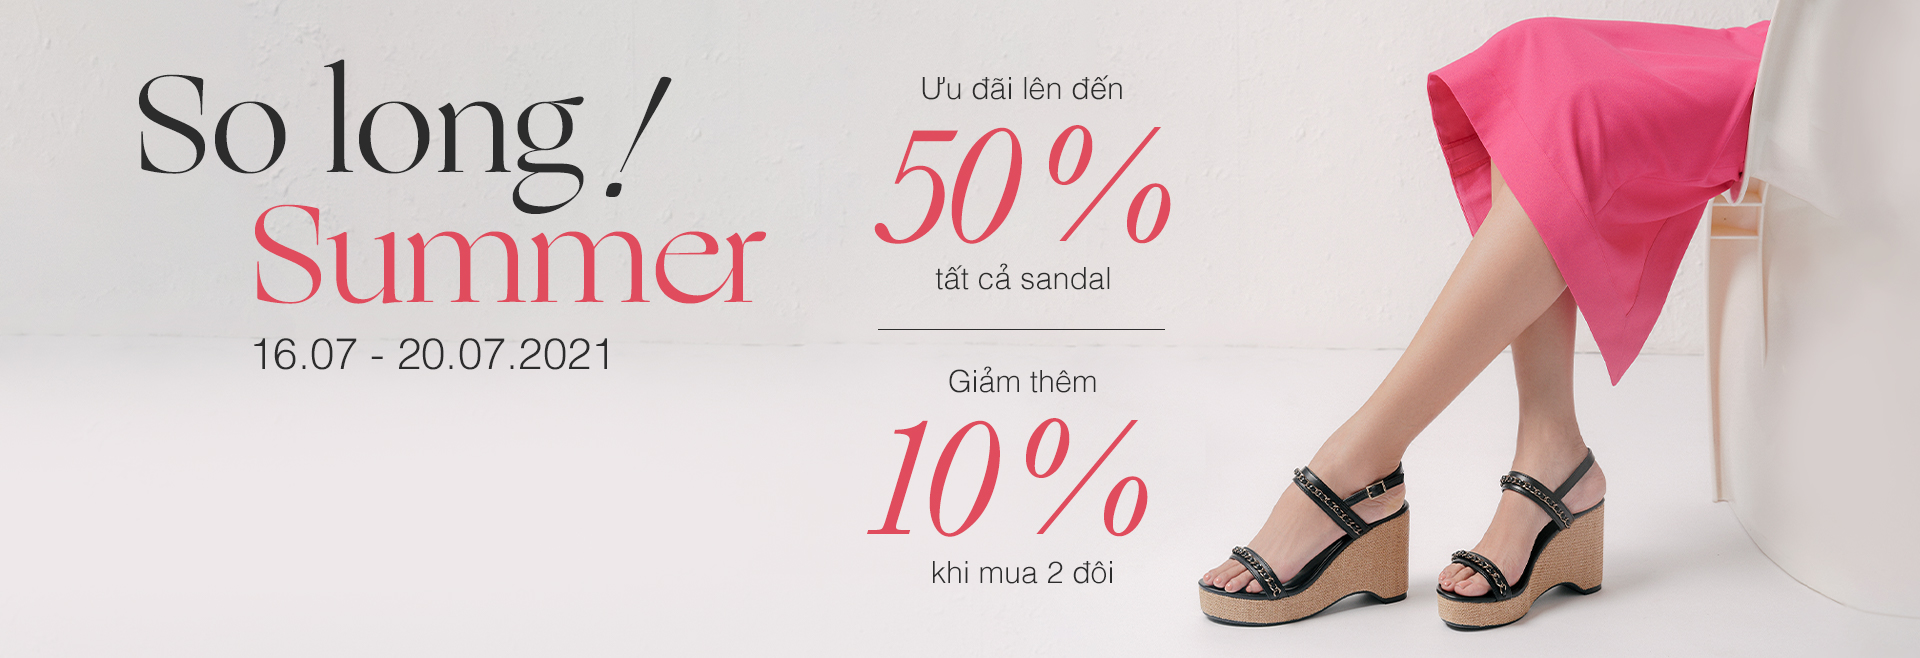 Ưu đãi 10% - 50% các sản phẩm giày sandals